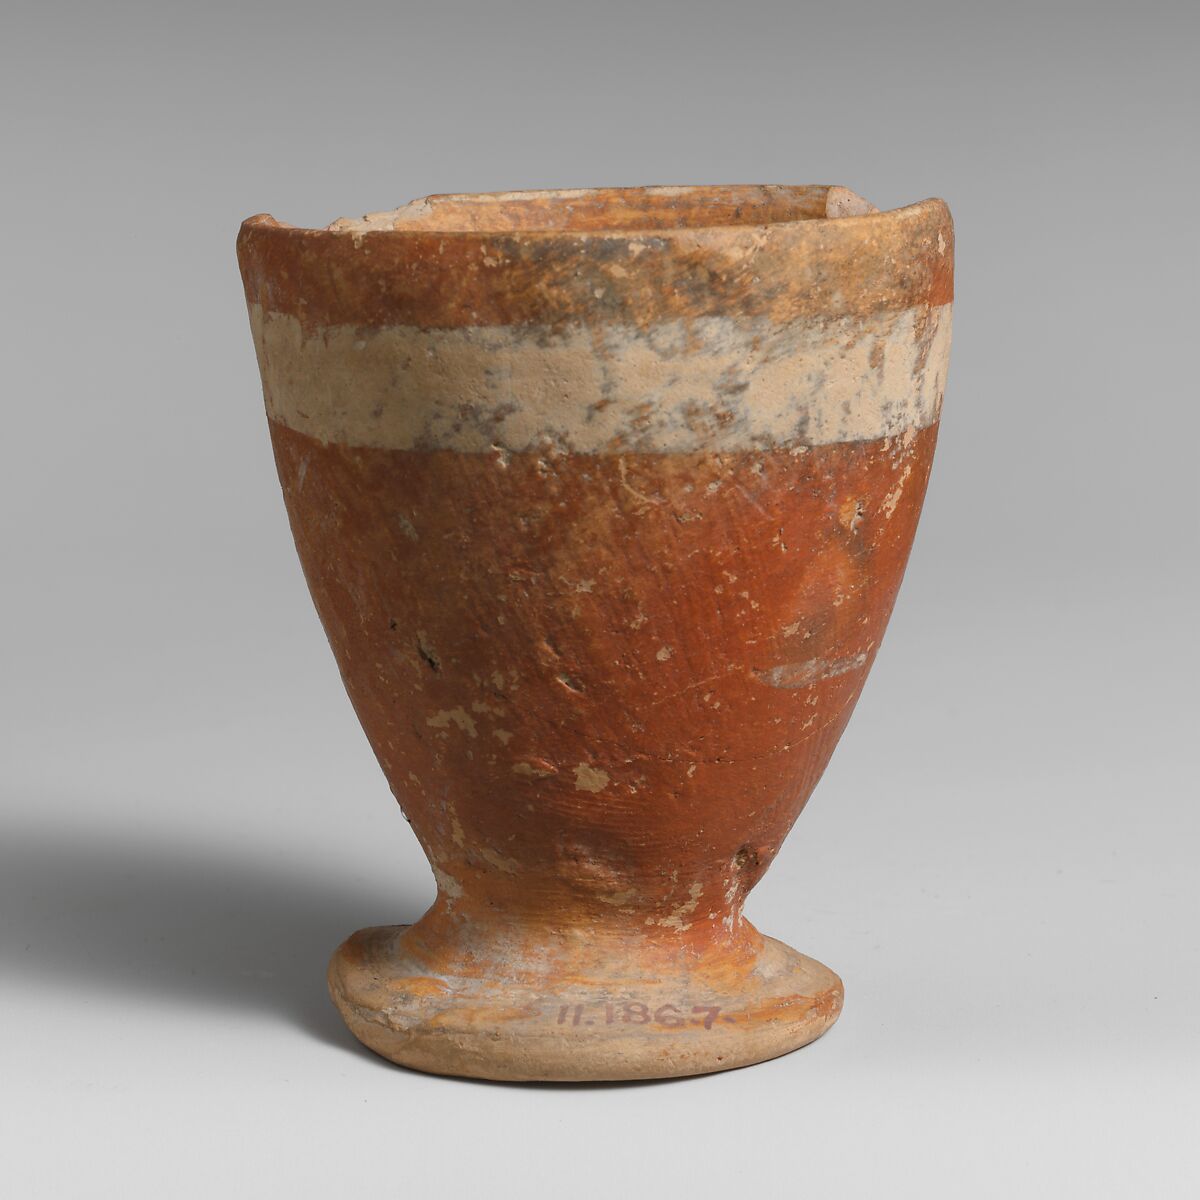 Terracotta goblet, Terracotta, Minoan 